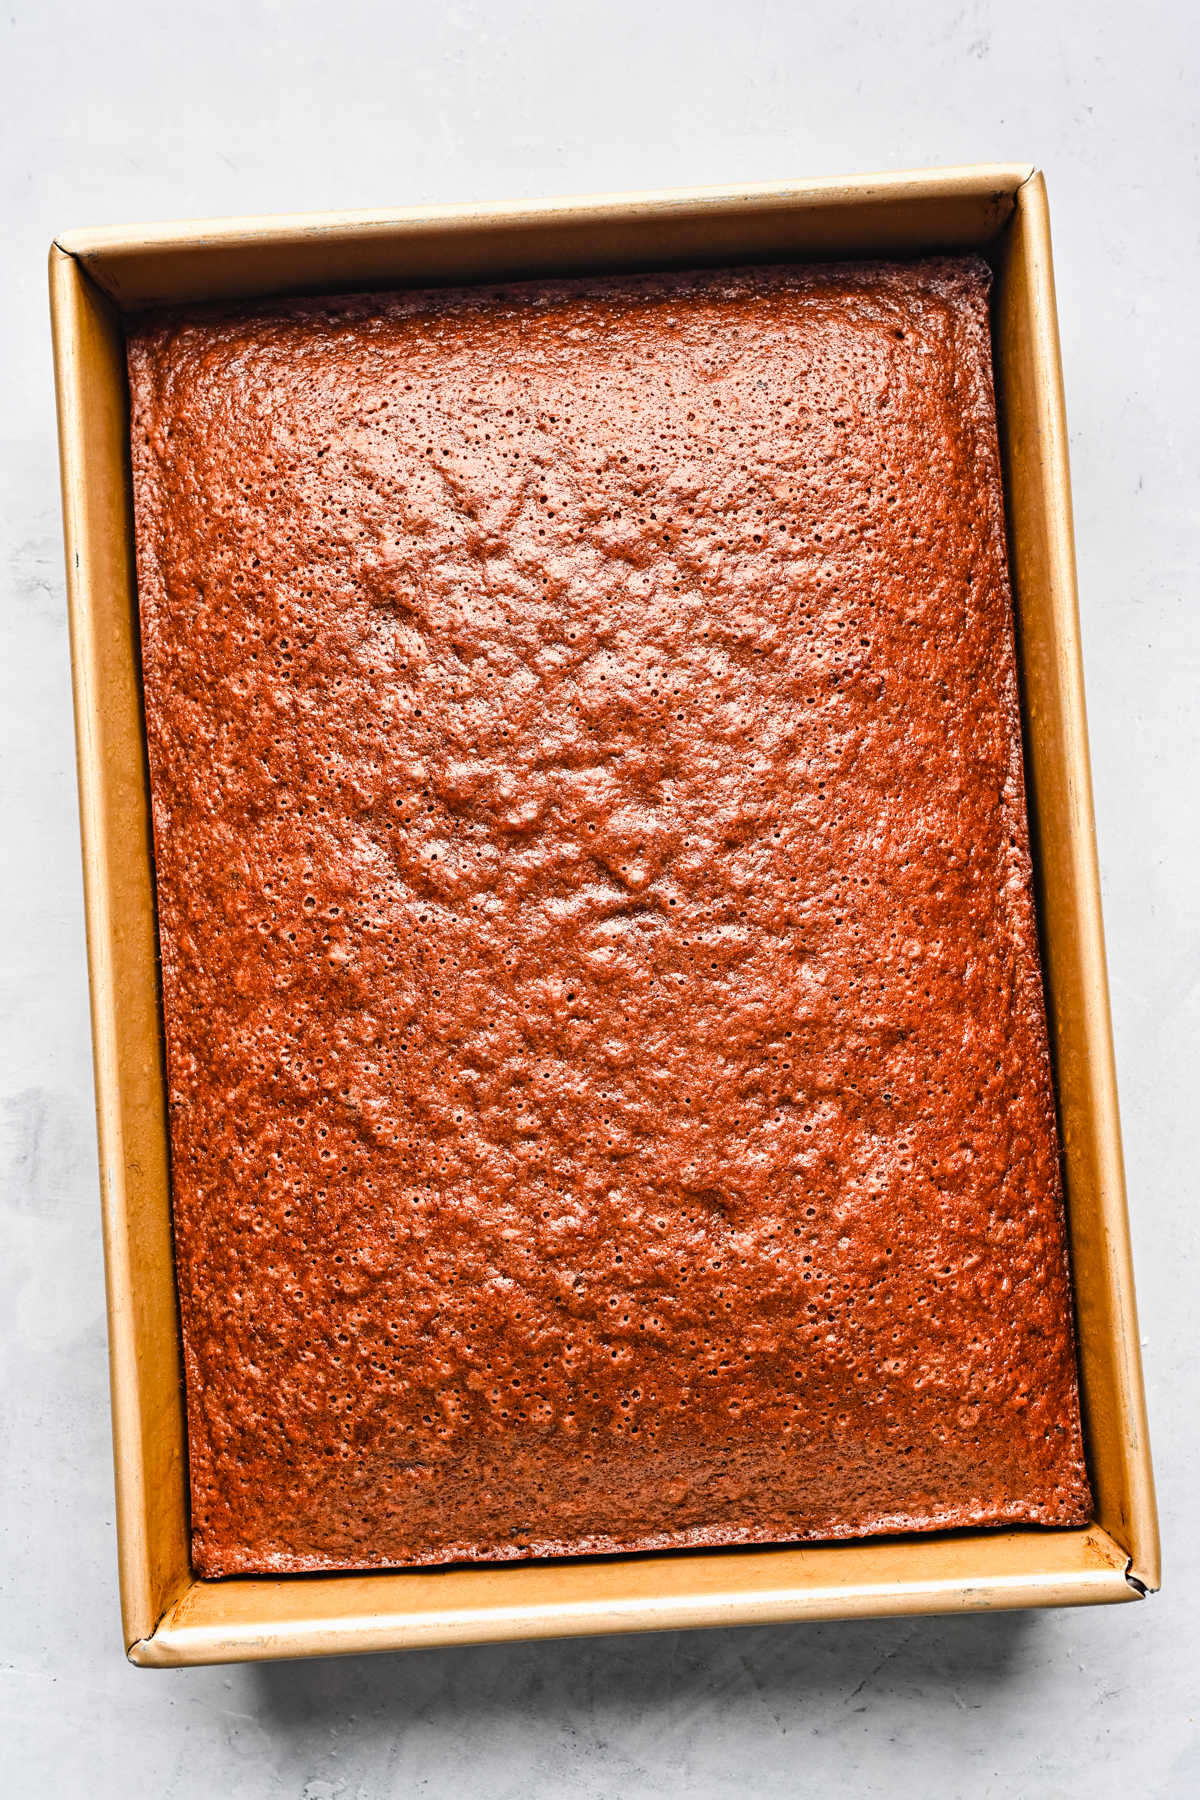 Baked German chocolate cake in a sheet pan.